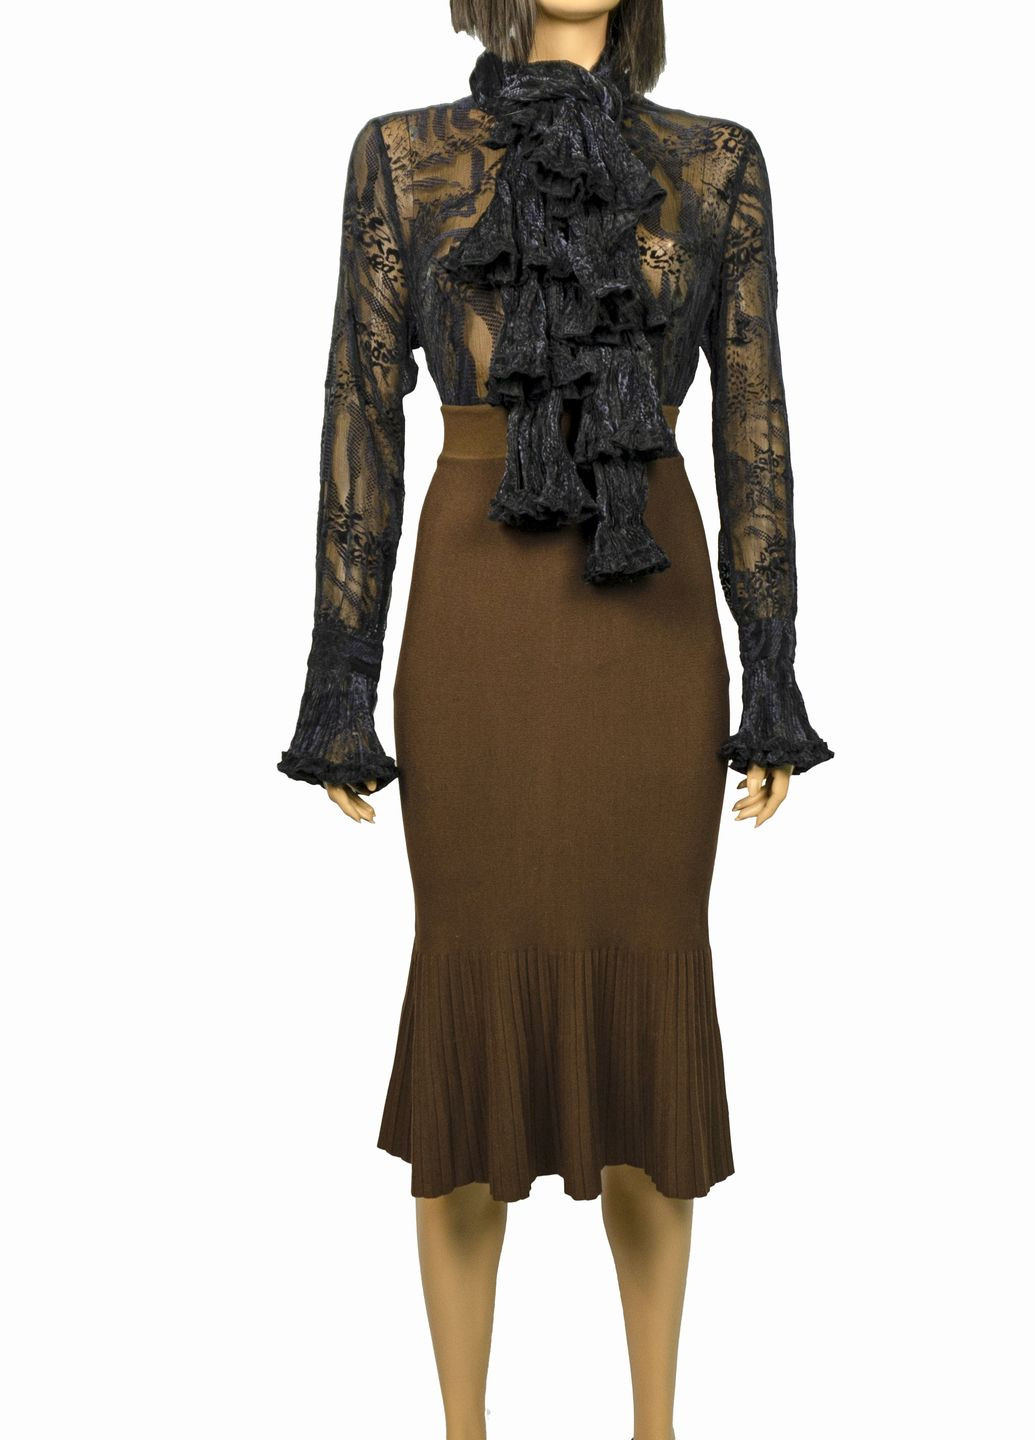 Черная демисезонная женская блуза из органзы с шарфом lw-116679-3 черный Forza Viva